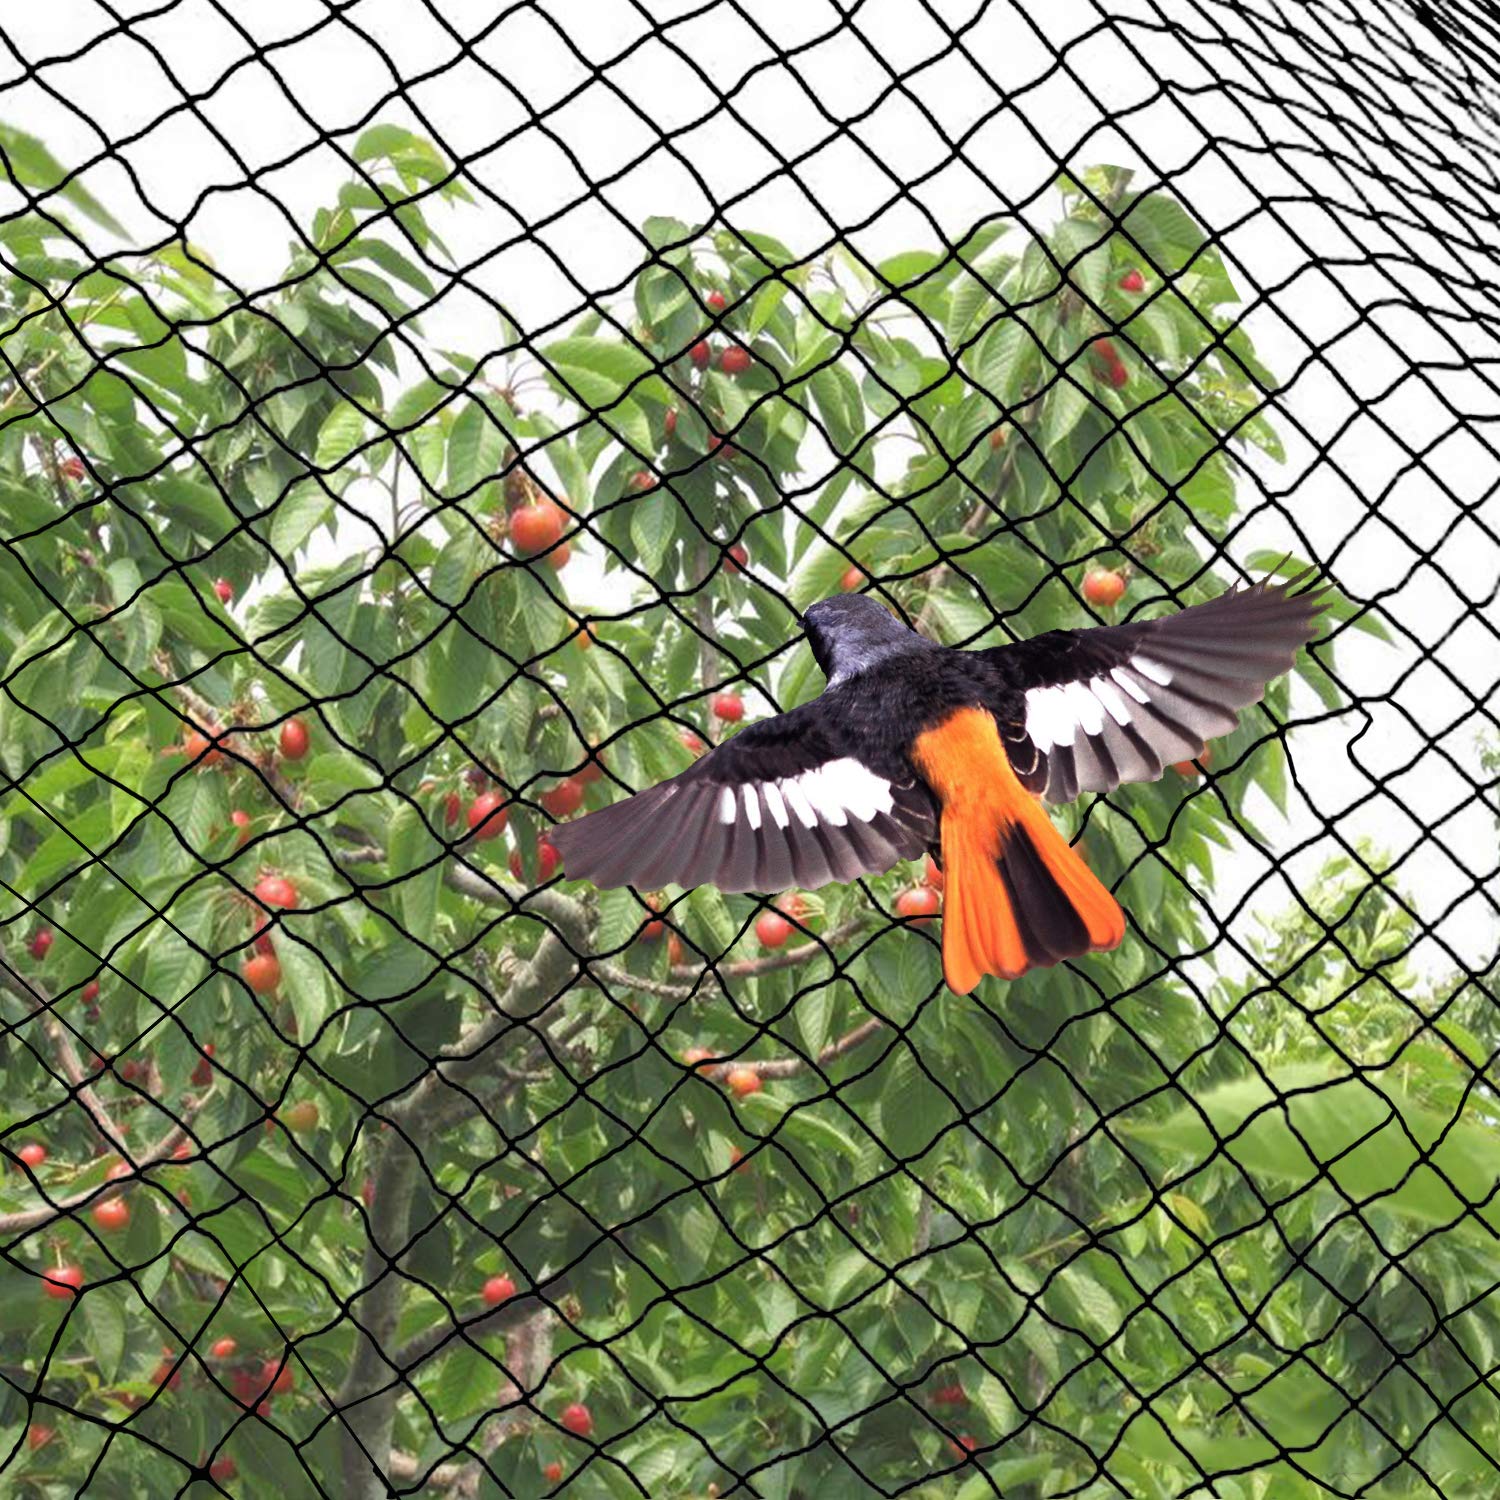 Anti-bird net in an apple farm